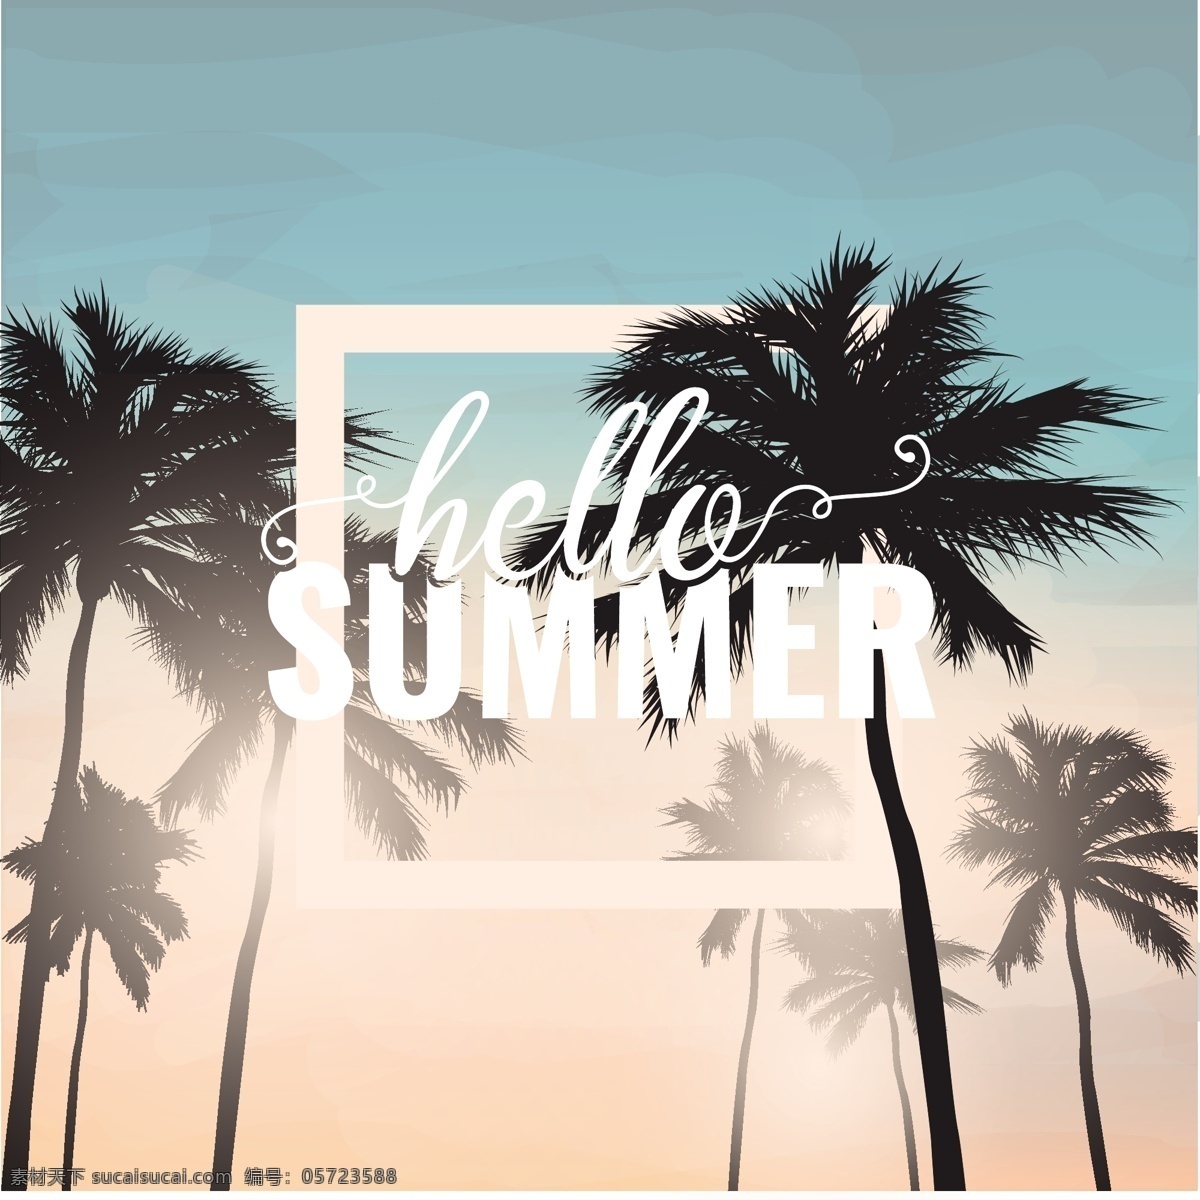 你好 夏天 背景 棕榈树 树木 夏季 海洋 海滩 阳光 壁纸 度假 夏季海滩 季节 季节性